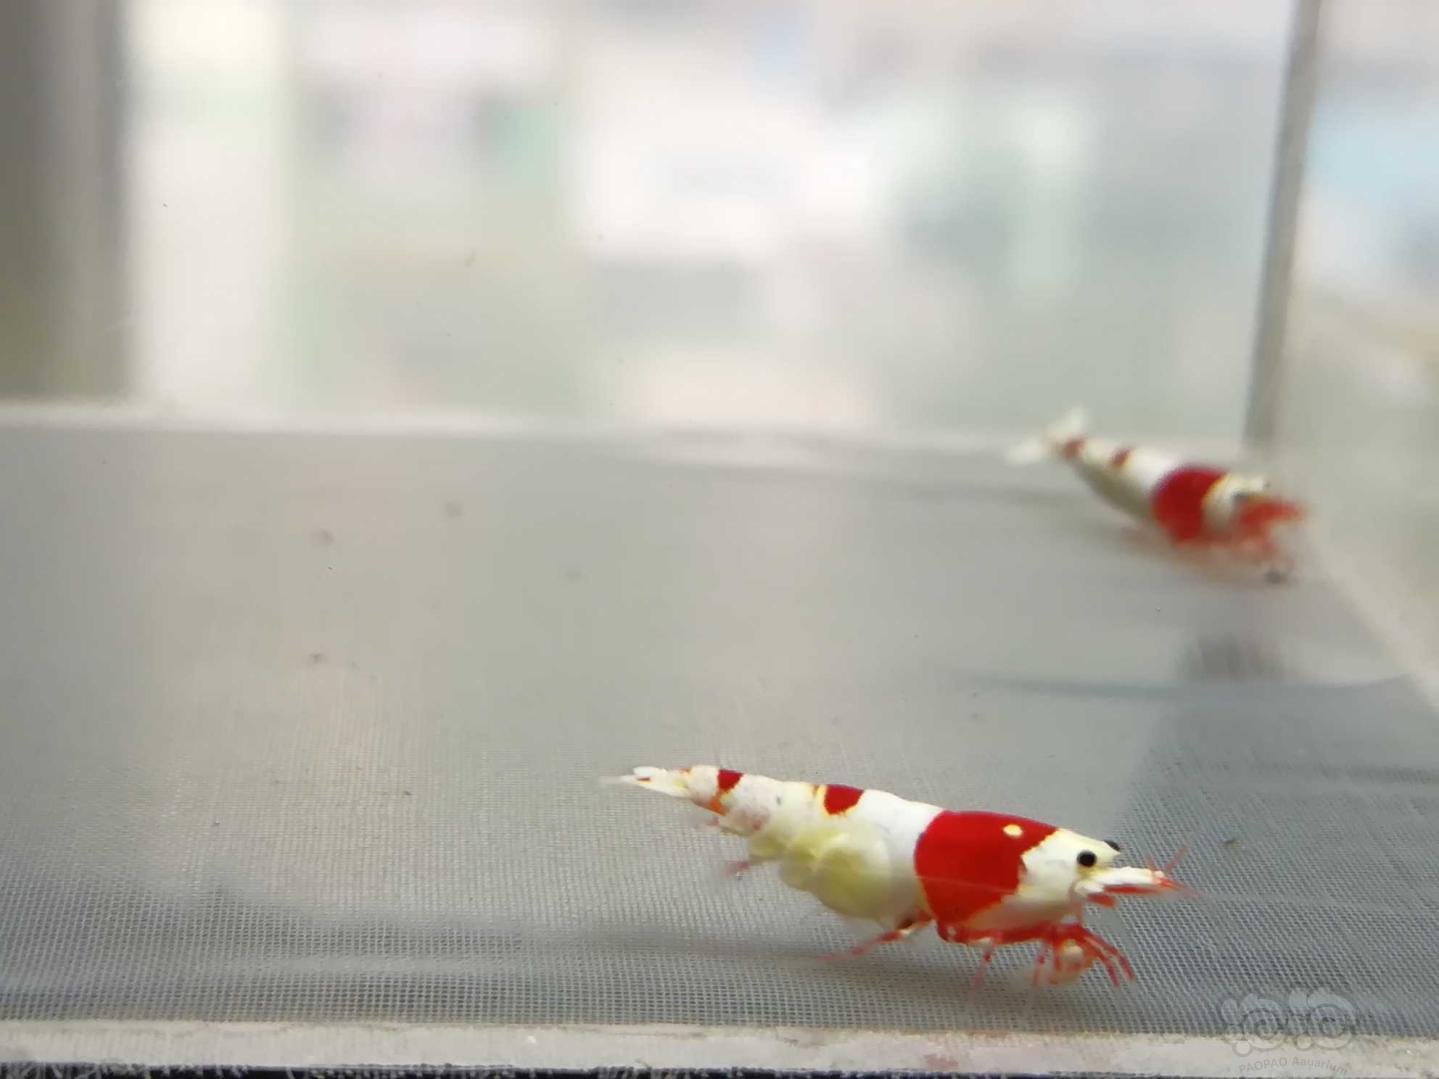 【虾】2020-09-15#RMB拍卖#红白纯血水晶虾一份2只-图7